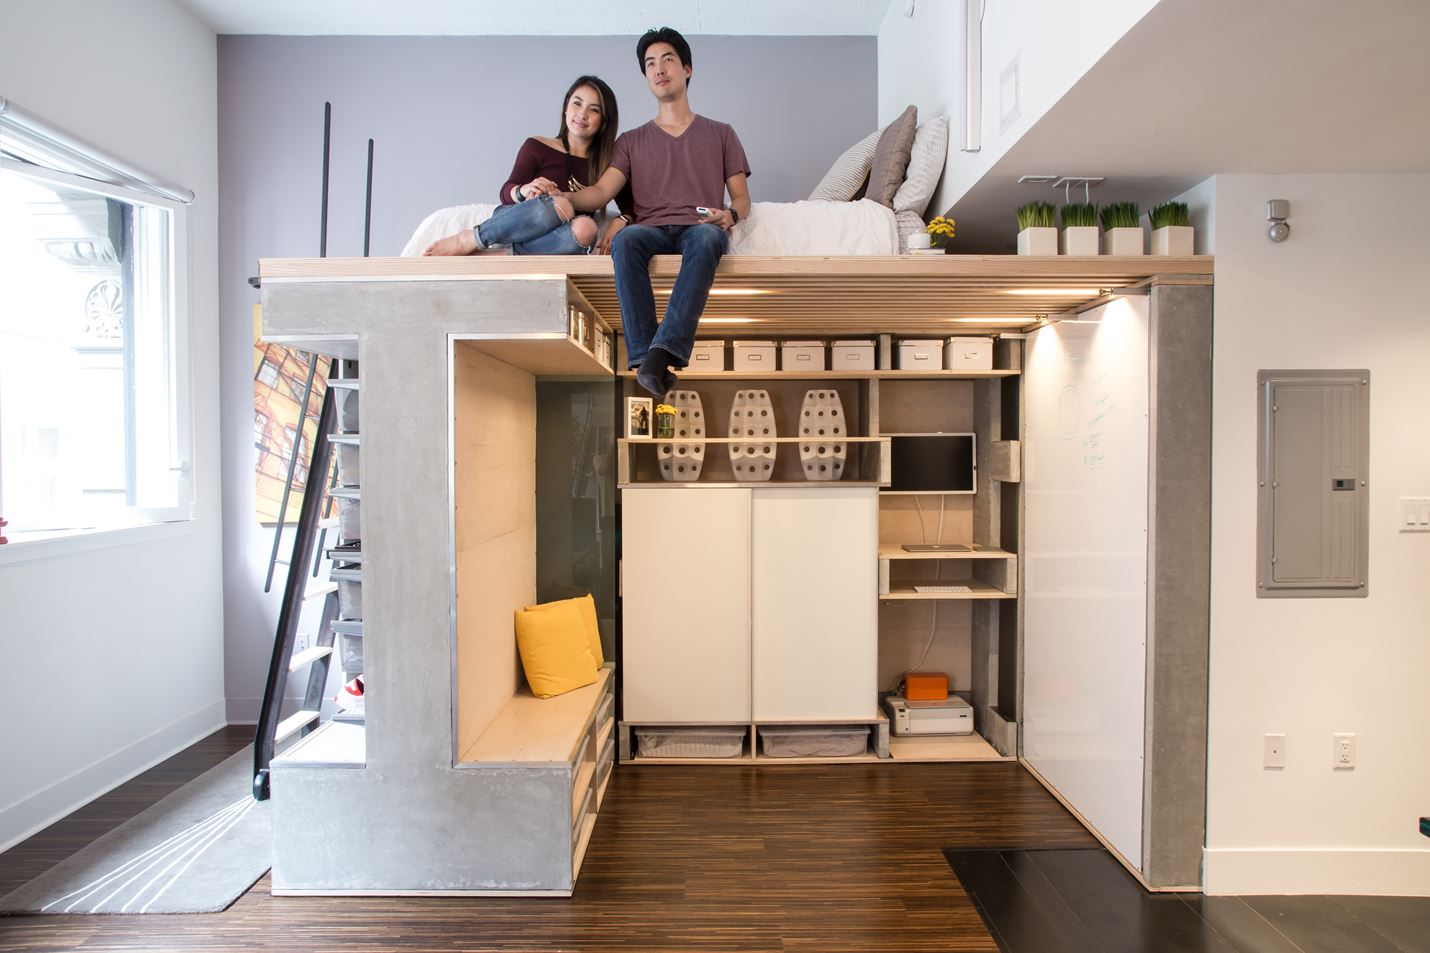 Система Domino Loft была разработана для молодой пары проживающей в небольшой квартире в Сан-Франциско.